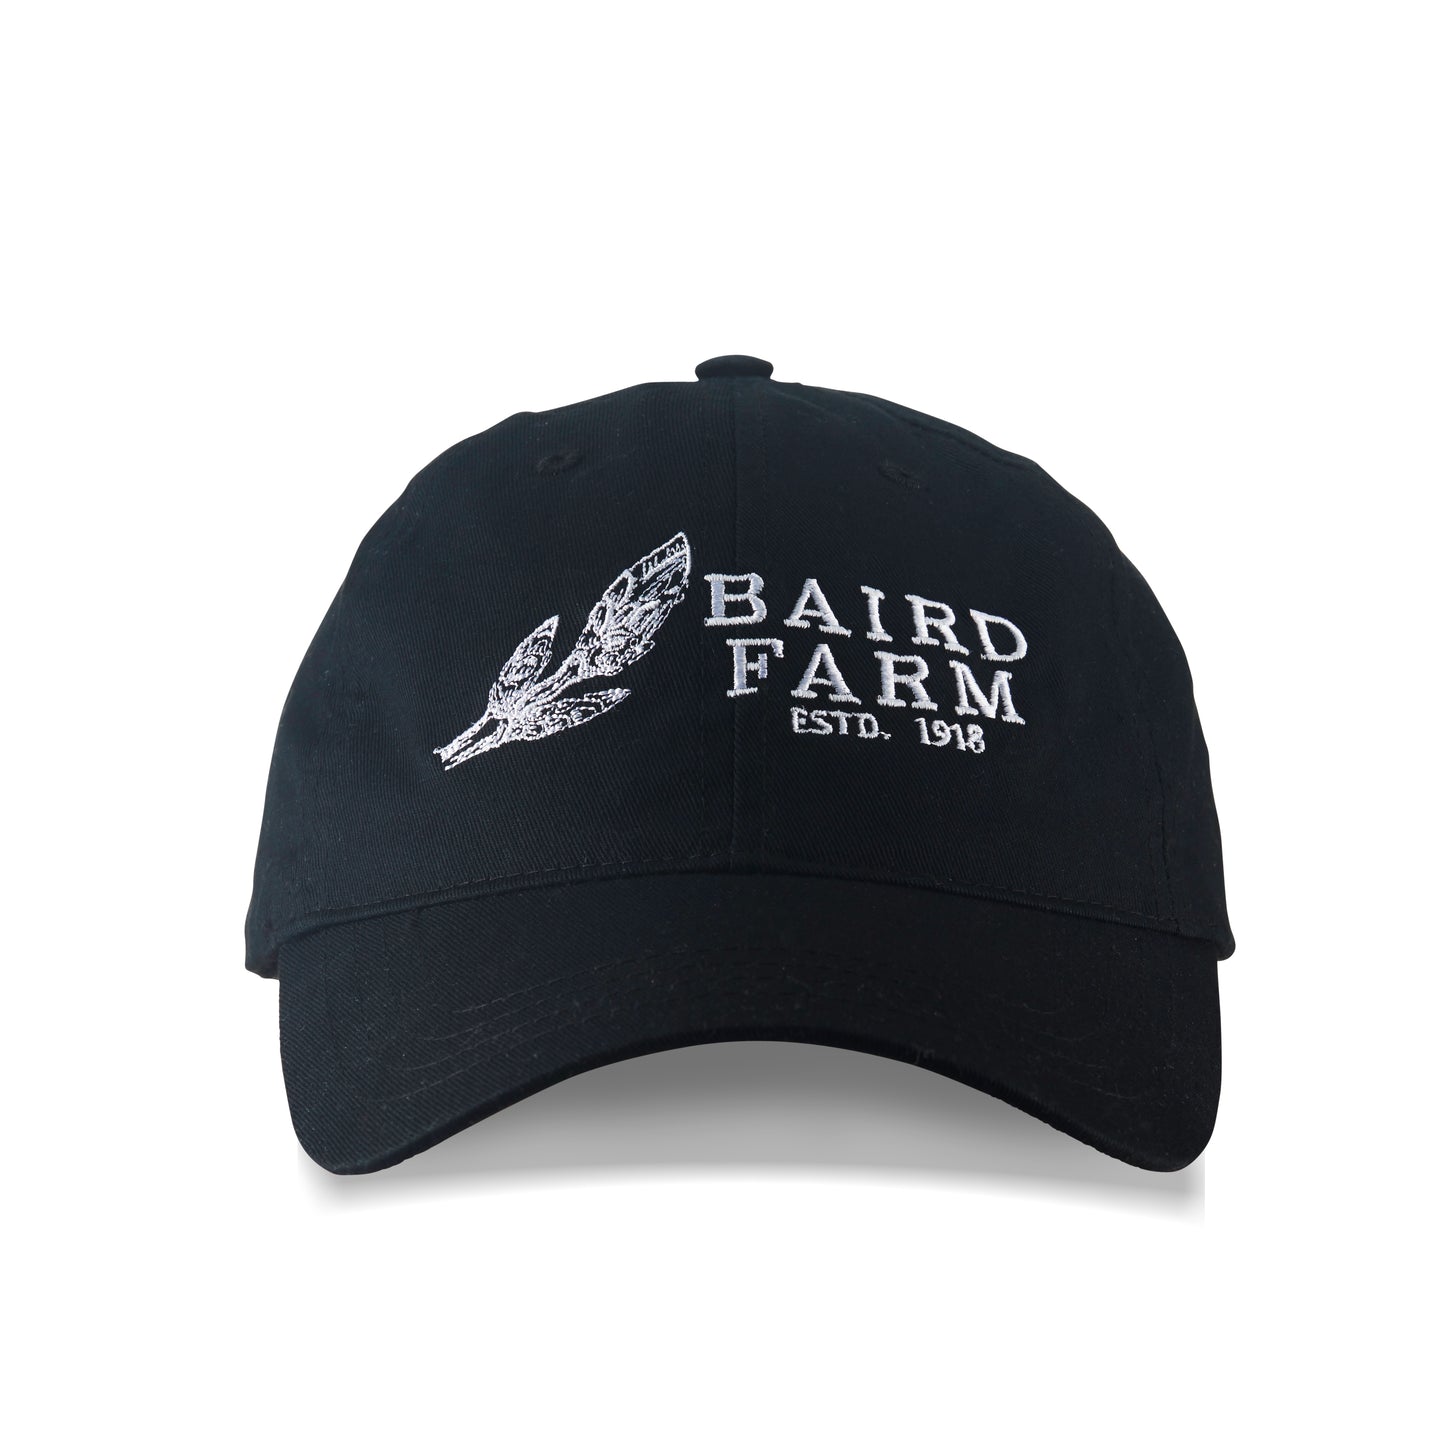 Baird Farm Baseball Cap